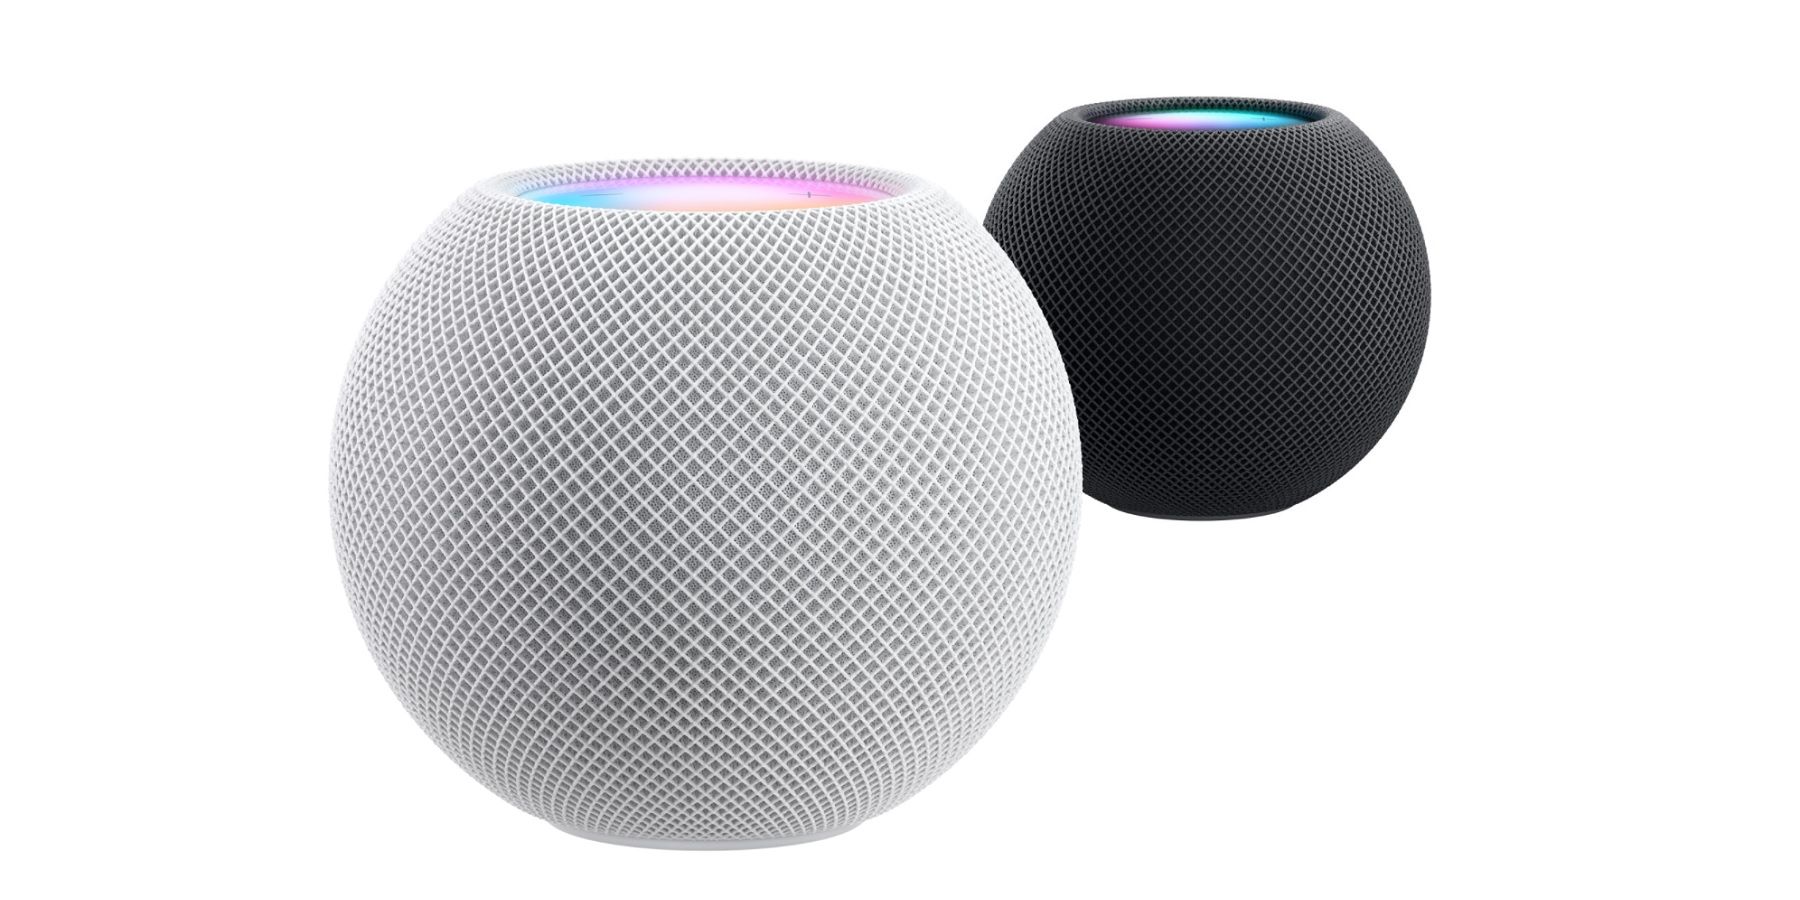 Apple Smart Speaker